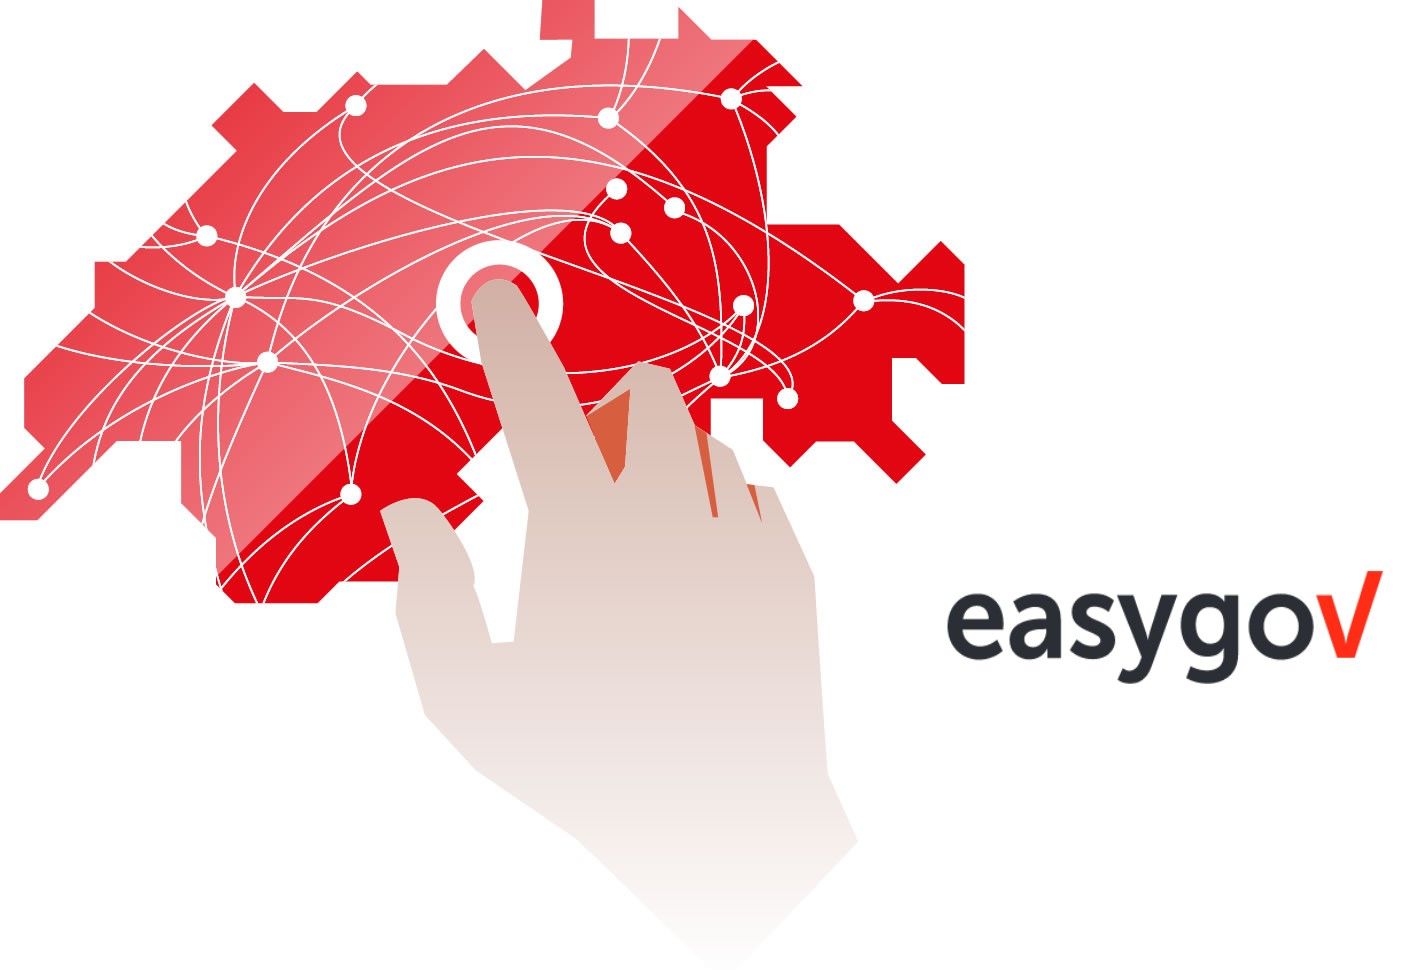 Förderung der Bekanntheit des Portals “EasyGov” durch eine geeignete Social Media Strategie